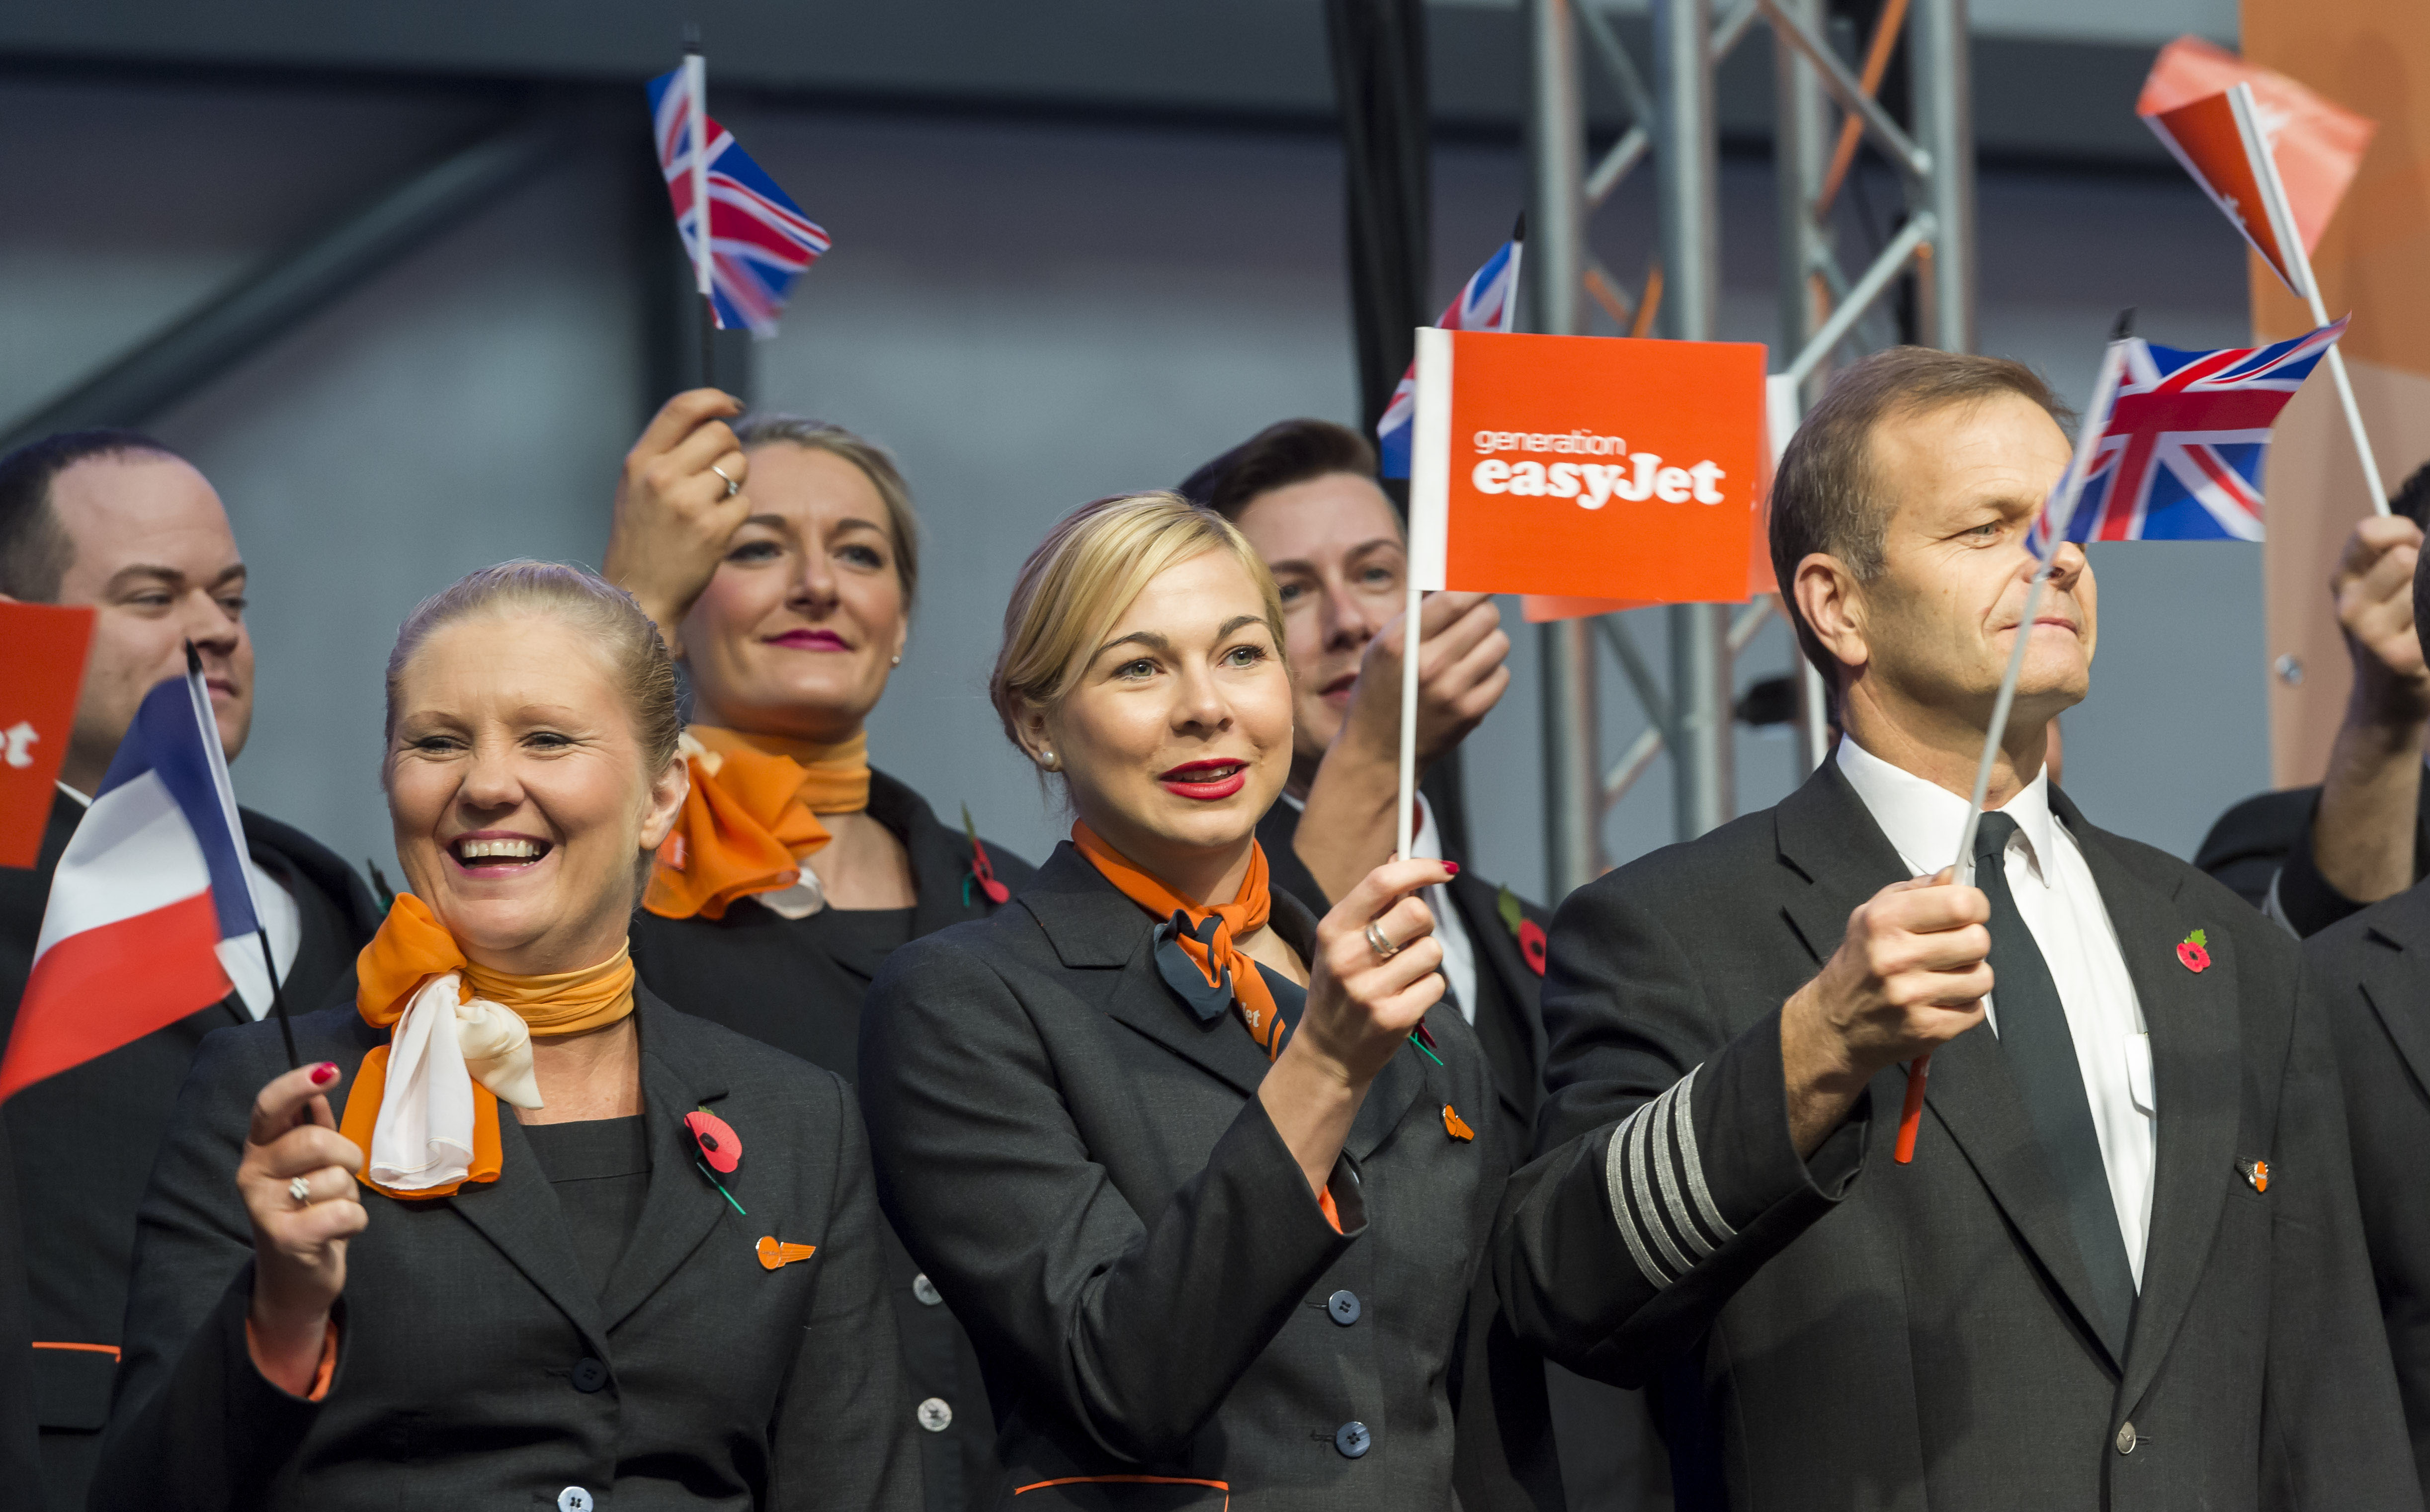 2015-11-10 11:11:27 LONDEN - De viering van het twintig jarig bestaan van luchtvaartmaatschappij easyJet in Hangar89 op Londen Luton. ANP LEX VAN LIESHOUT